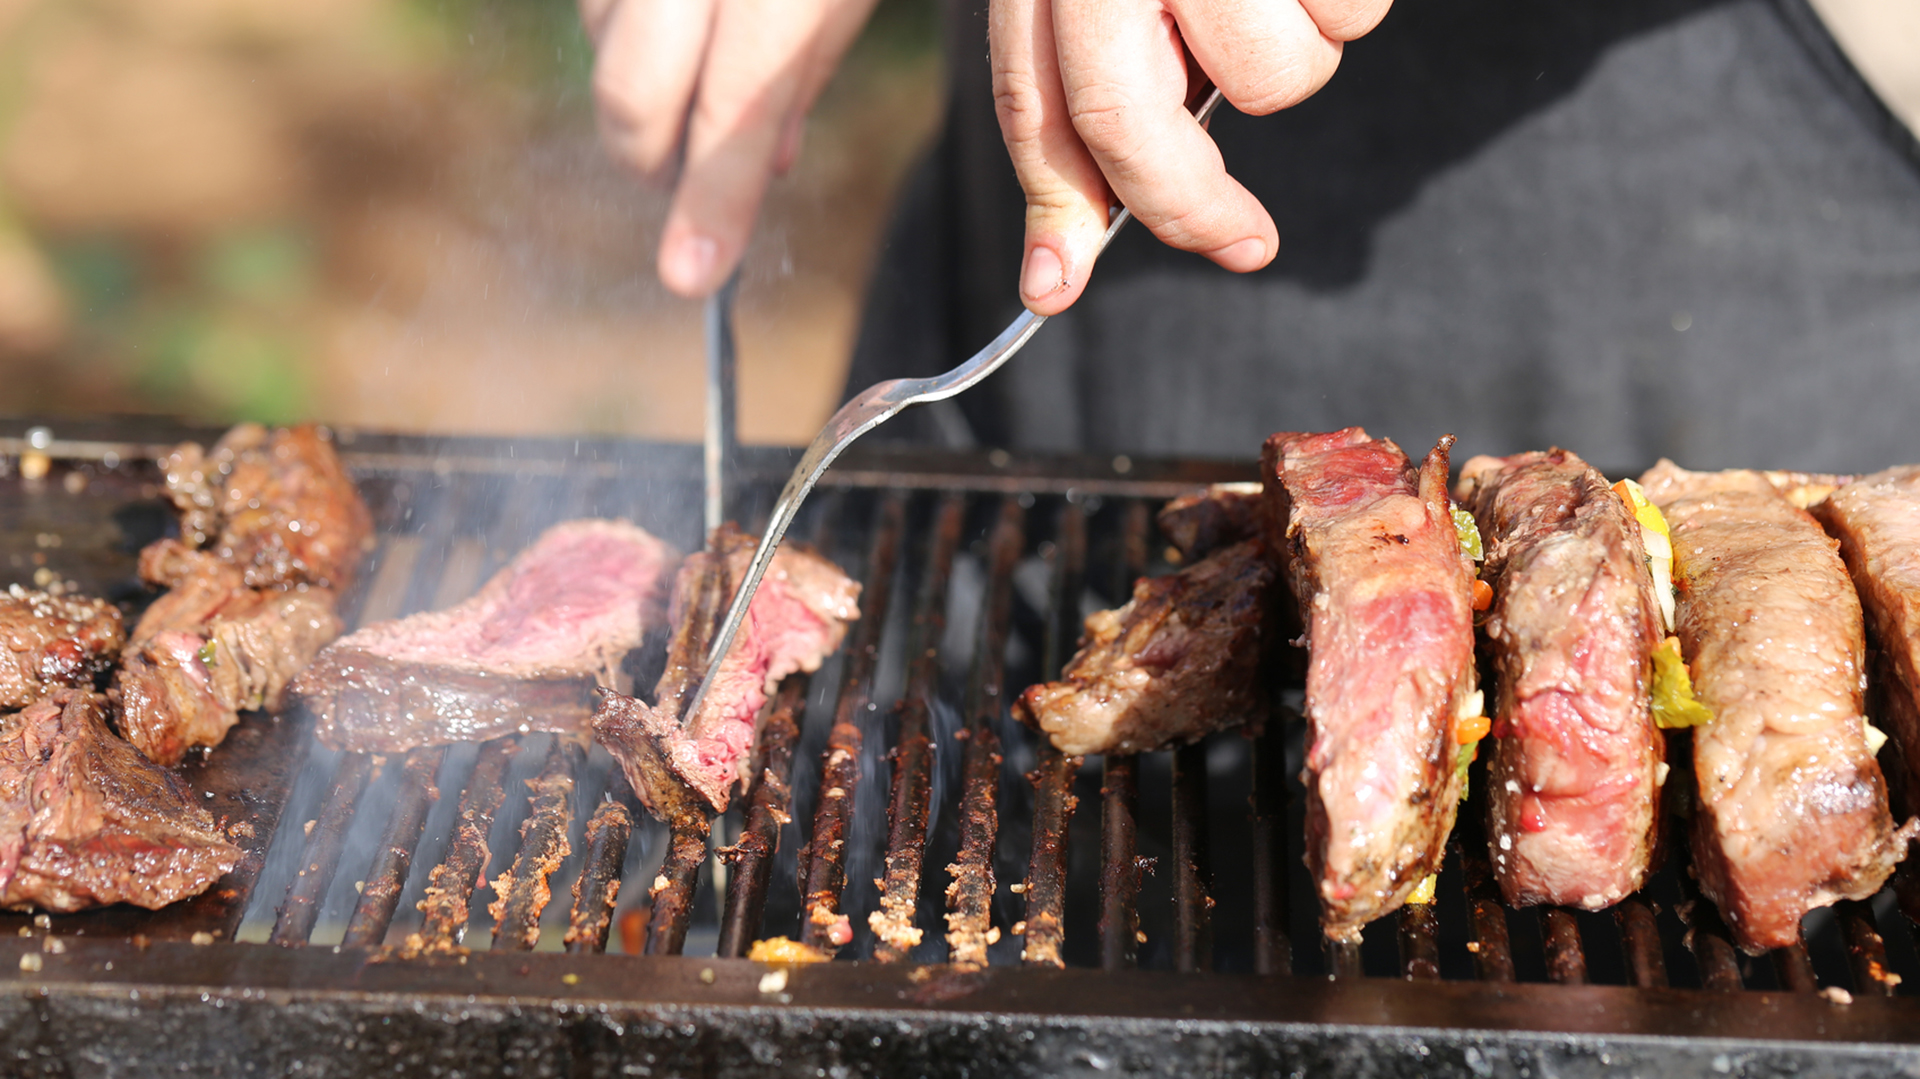 Si al cocinarlas, las carnes rojas presentan partes mal cocidas en su interior, el riesgo de ETA es mayor (Getty)